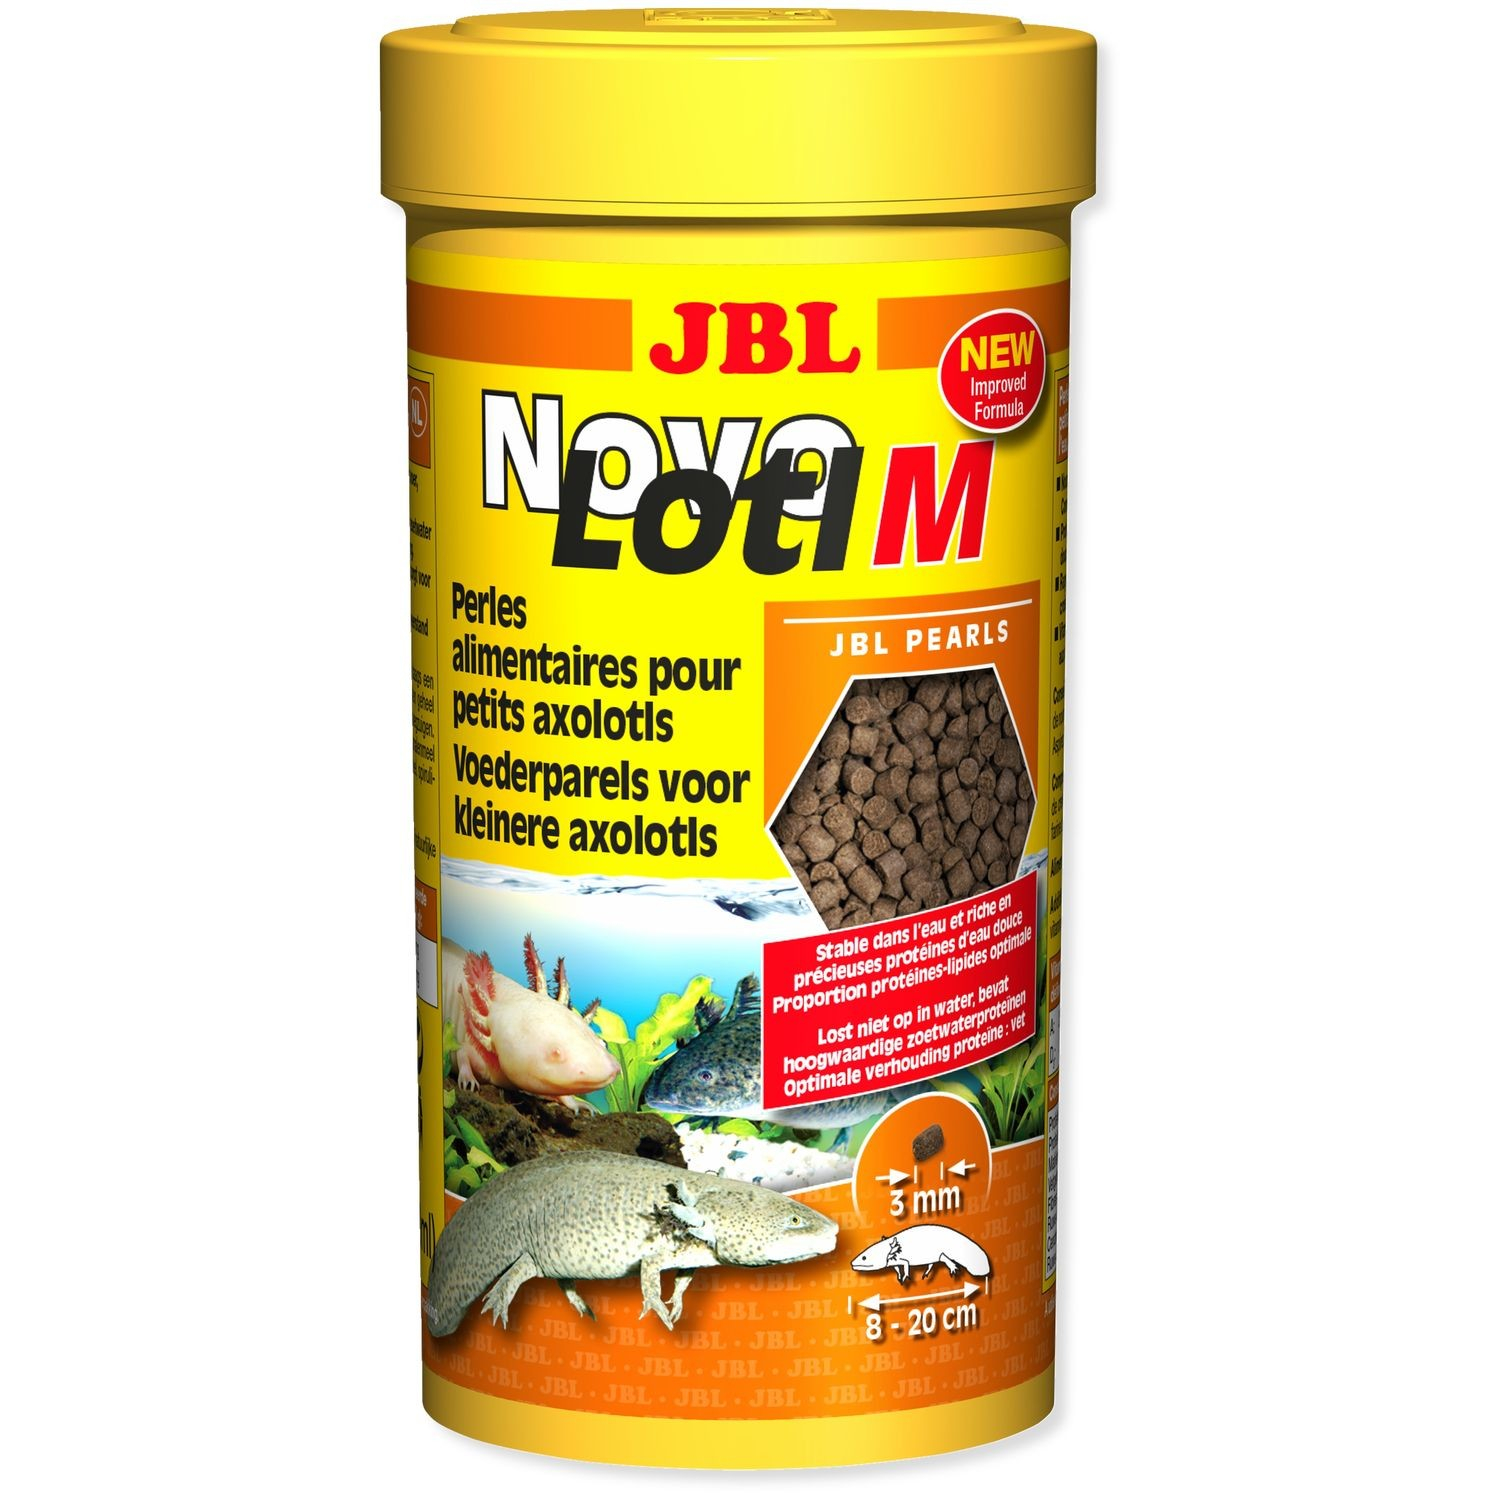 JBL NovoLotl M Mangime per Axolotl da 10 a 25 cm